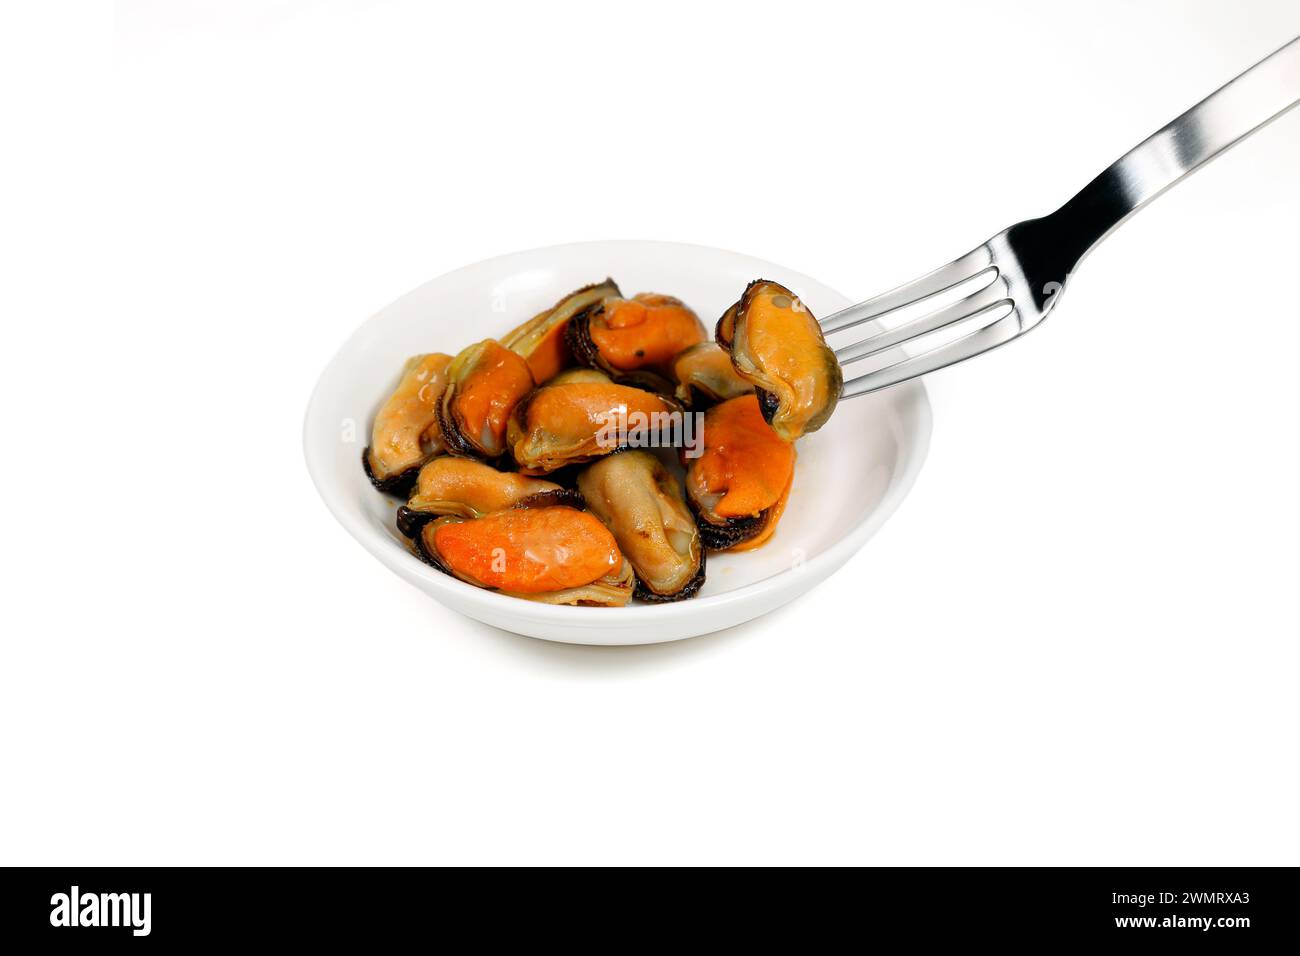 Una forchetta raccoglie cozze affumicate in scatola da un piatto, molluschi isolati su sfondo bianco. Foto Stock